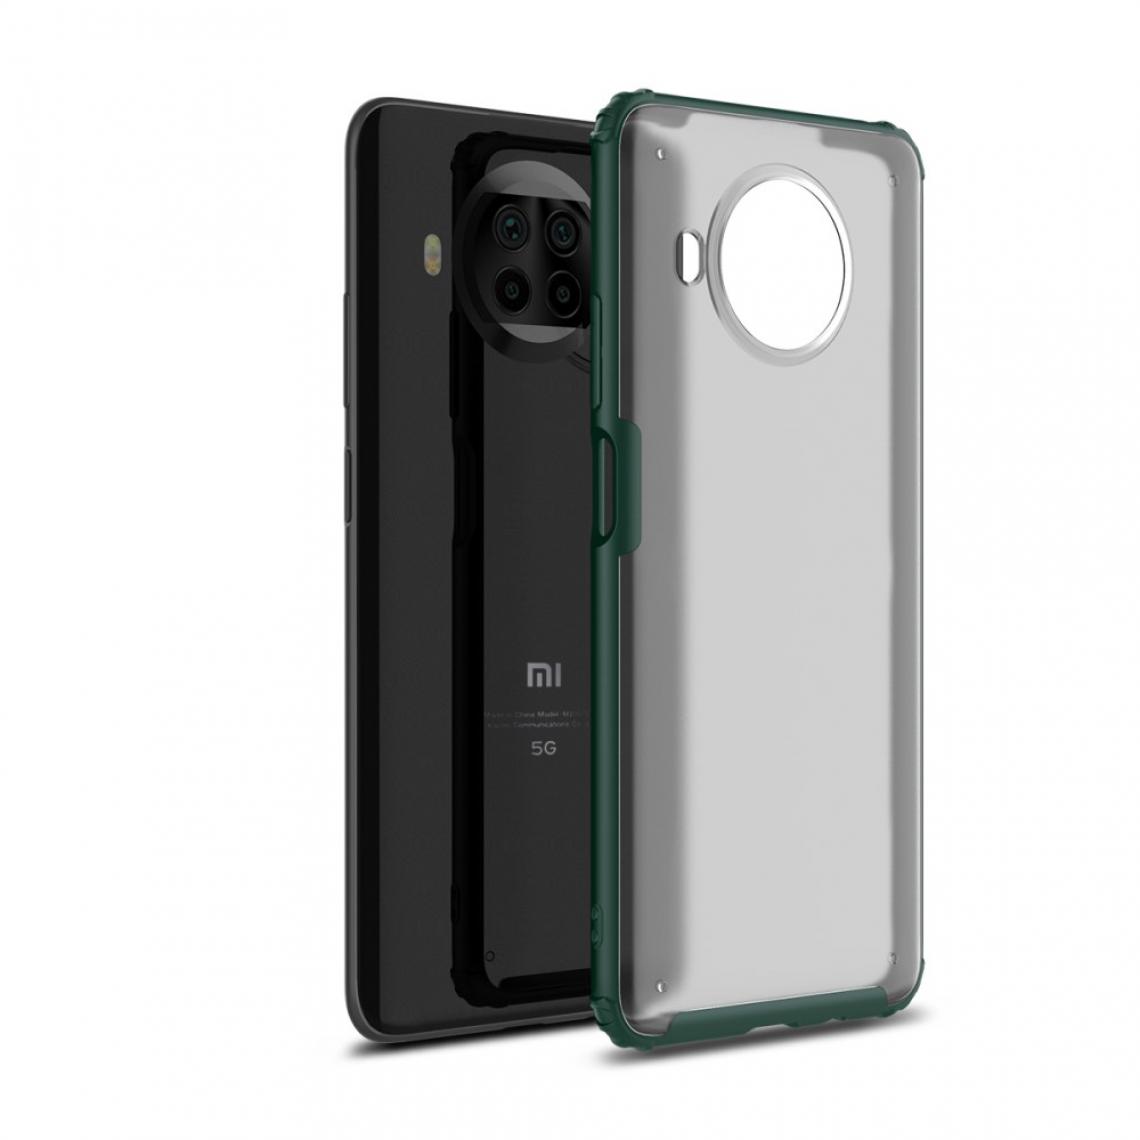 Other - Coque en TPU armure series matte vert pour votre Xiaomi Mi 10T Lite 5G - Coque, étui smartphone